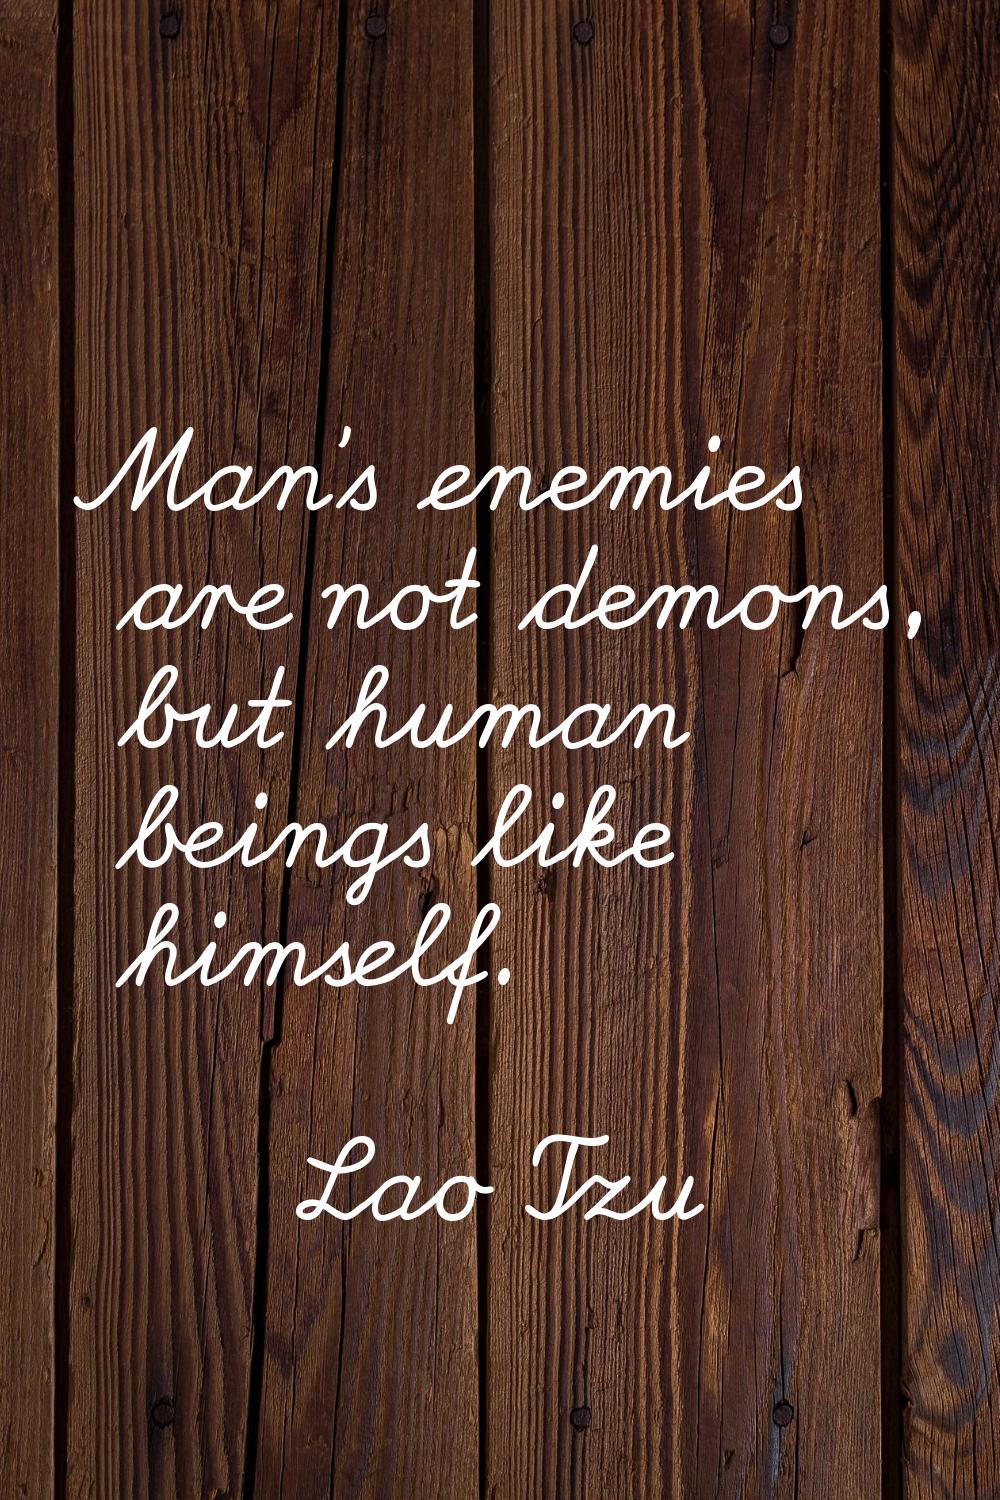 Man's enemies are not demons, but human beings like himself.